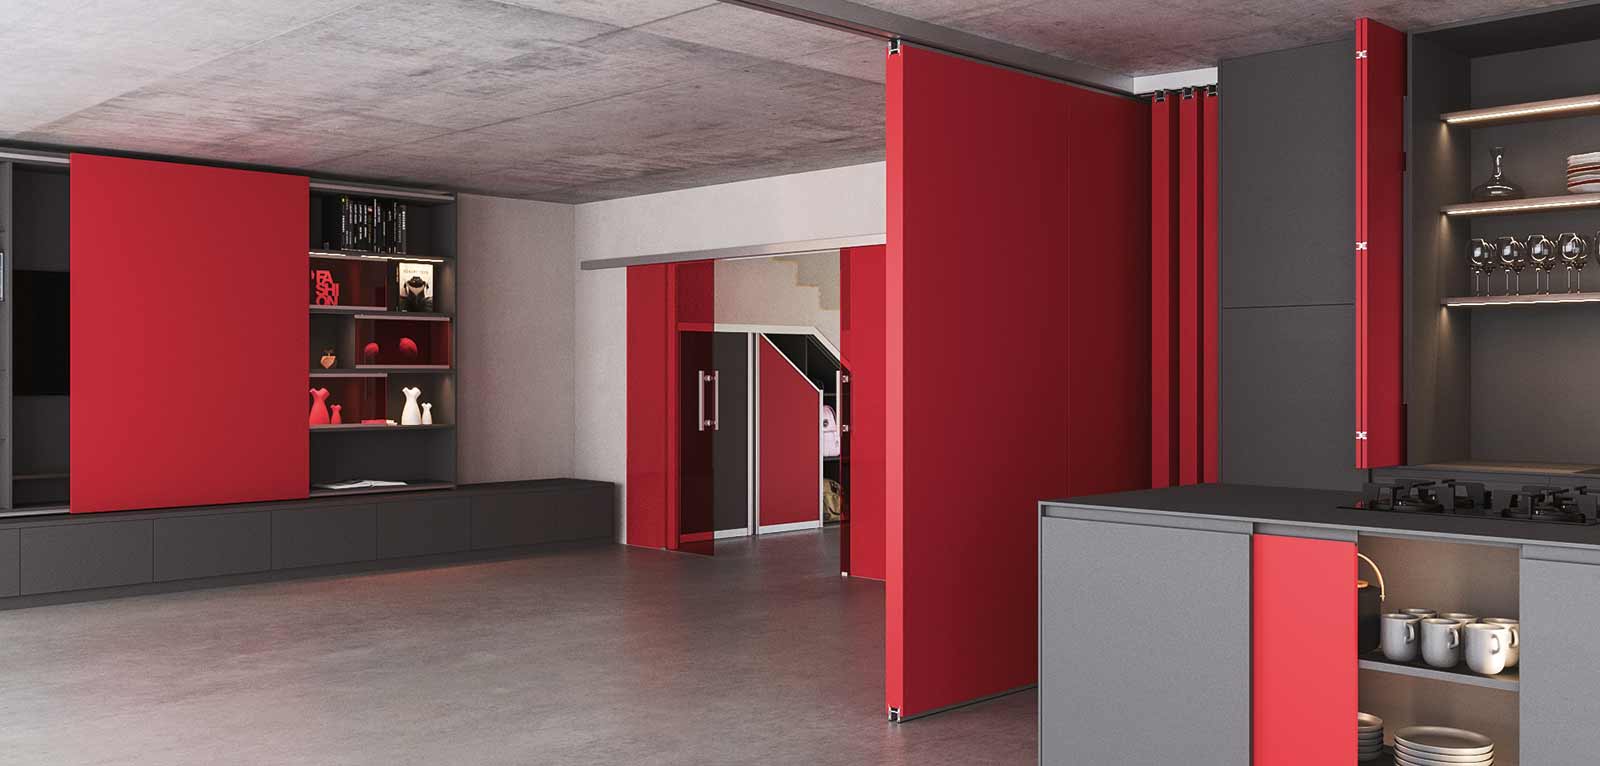 Häfele Slido, la gamme de coulissants modulaire pour meubles, portes et cloisons